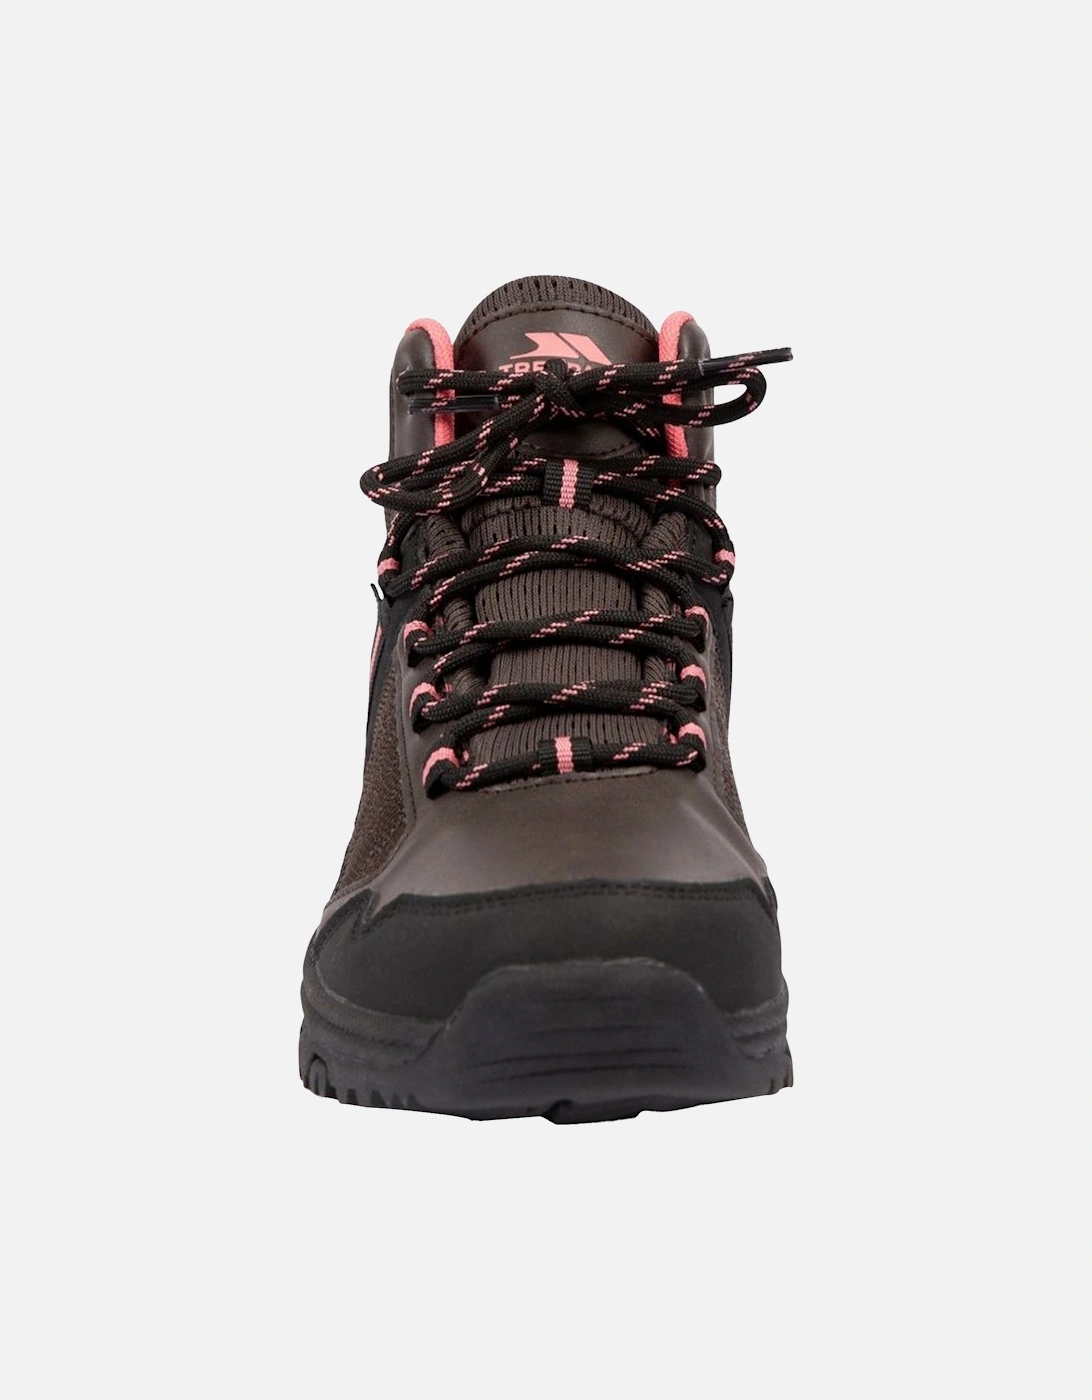 Womens/Ladies Lyre Waterproof Walking Boots